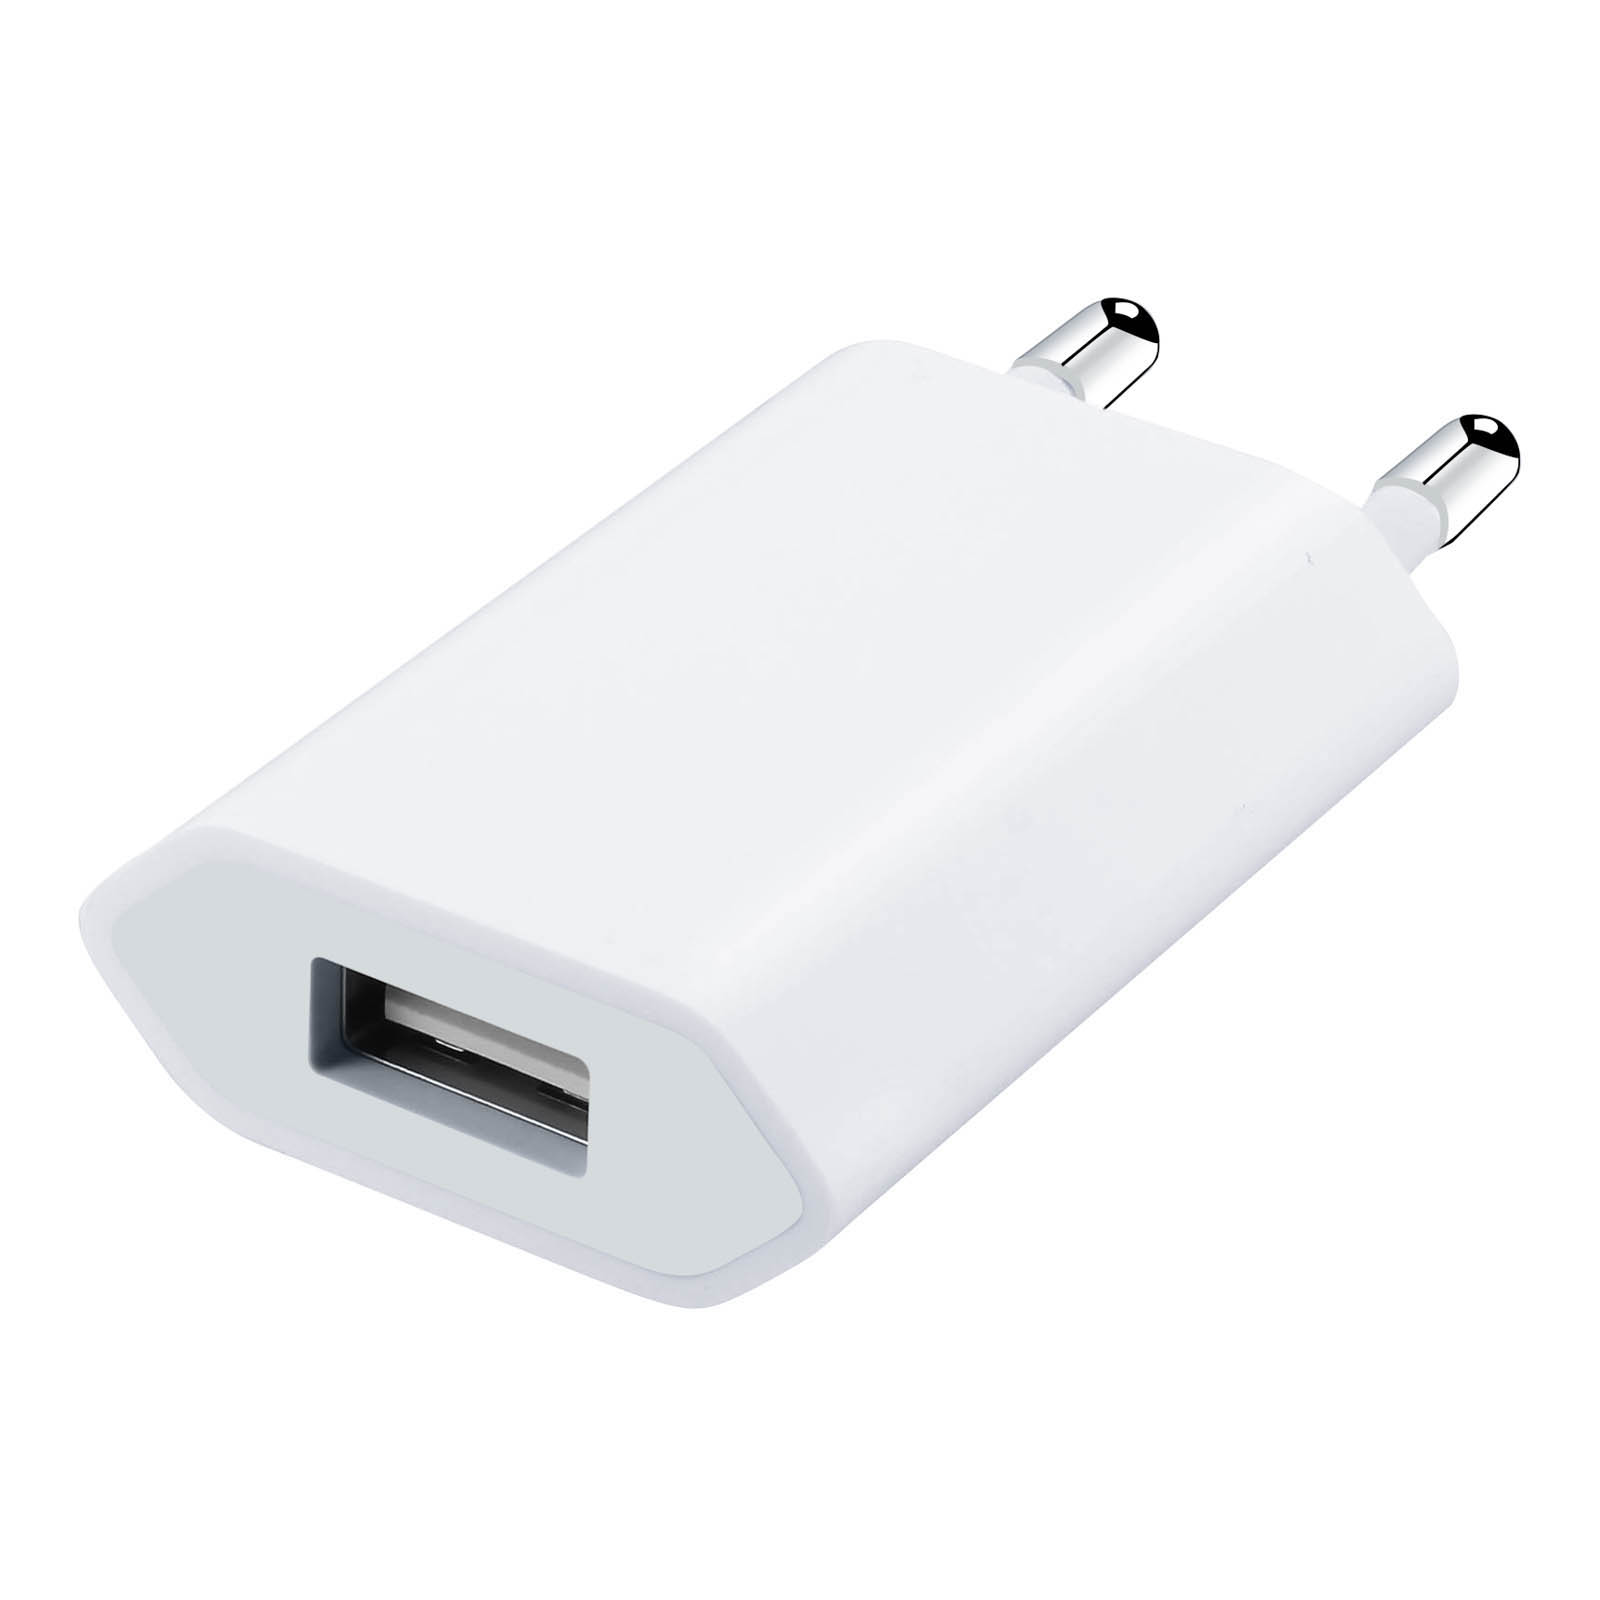 Prise secteur USB 5W d'origine Apple (A1400)